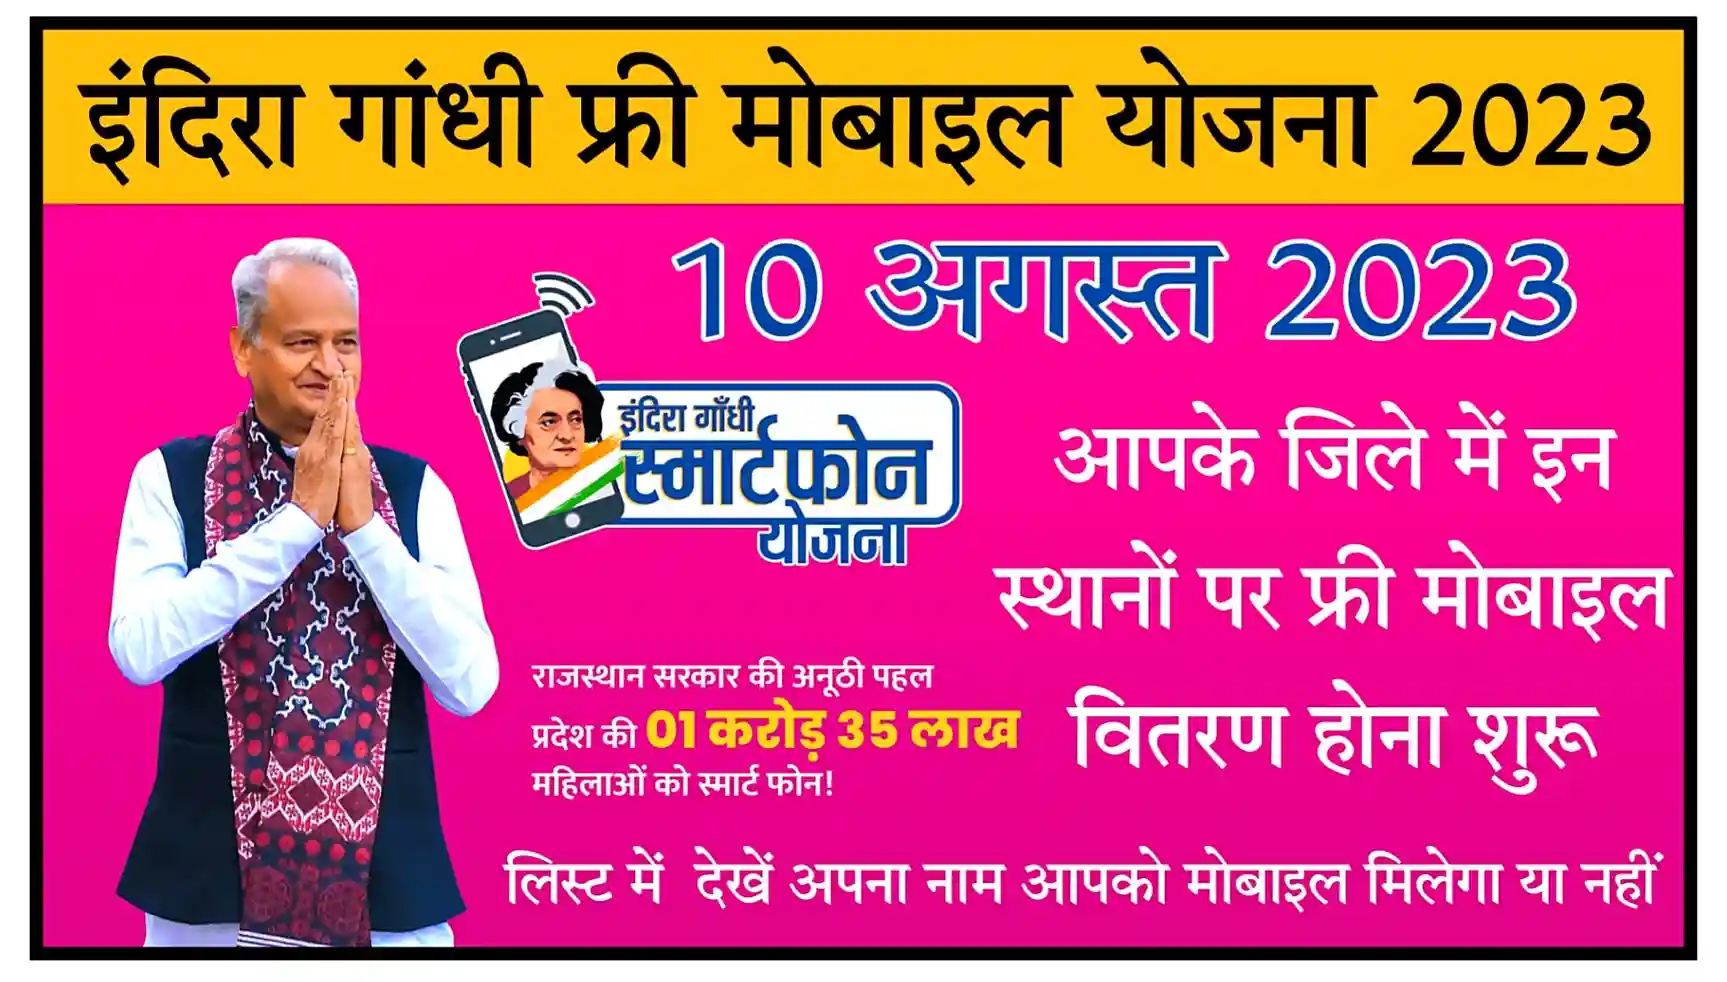 Indira Gandhi Free Mobile Yojana 2023 राजस्थान इंदिरा गांधी फ्री स्मार्टफोन योजना के तहत 10 अगस्त 2023 को इन स्थानों पर फ्री मोबाइल वितरण होना शुरू